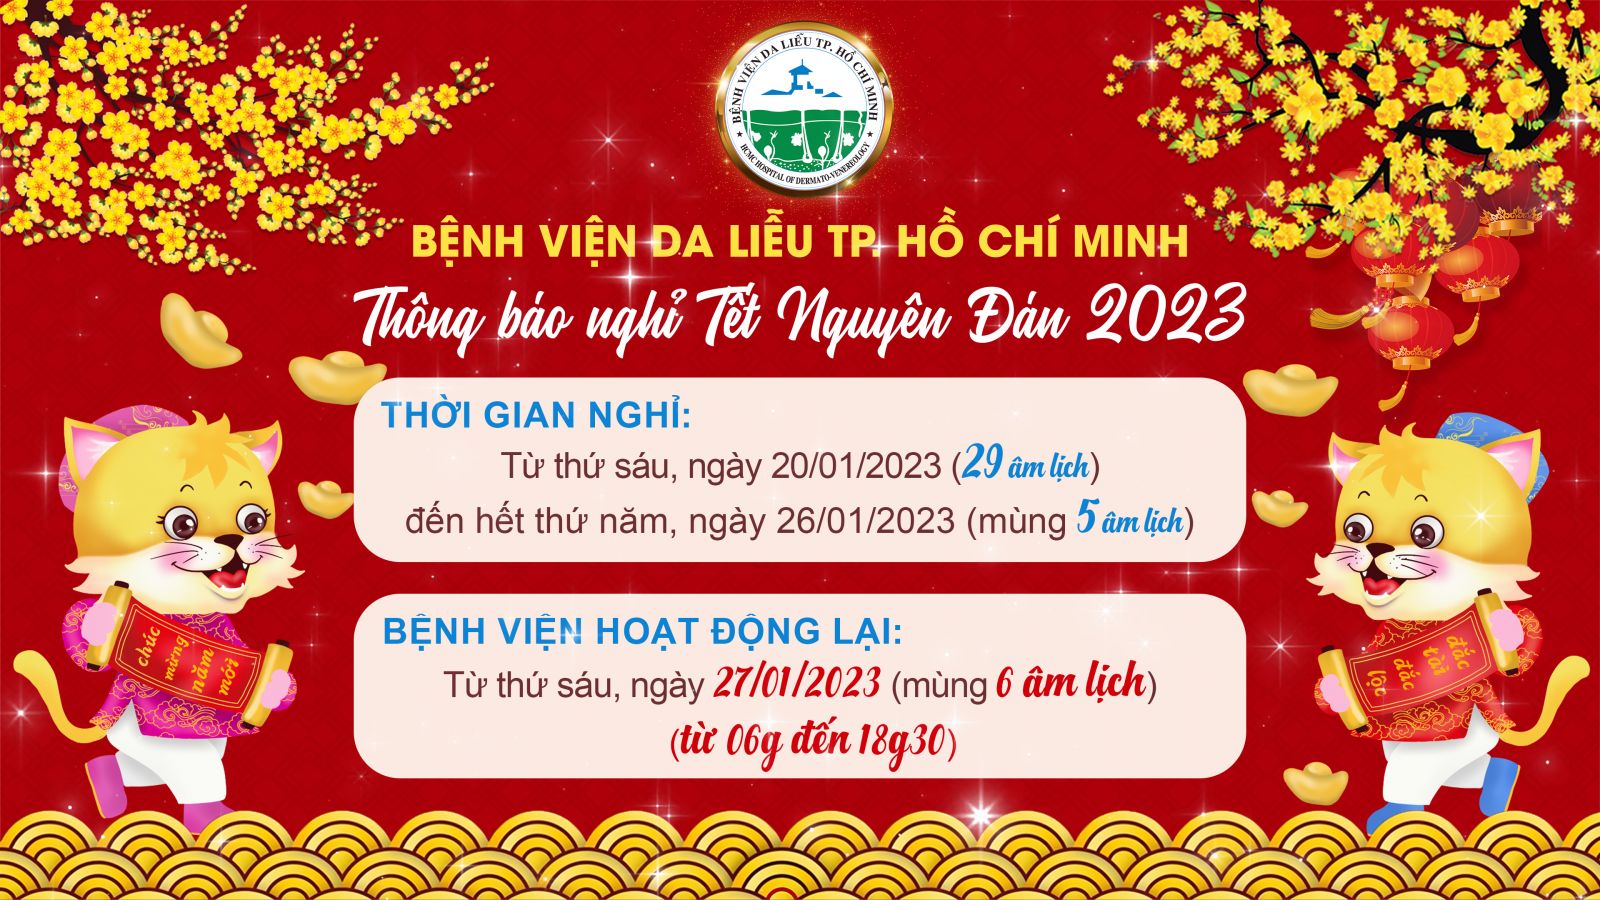 thong-bao-nghi-tet-nguyen-dan-2023